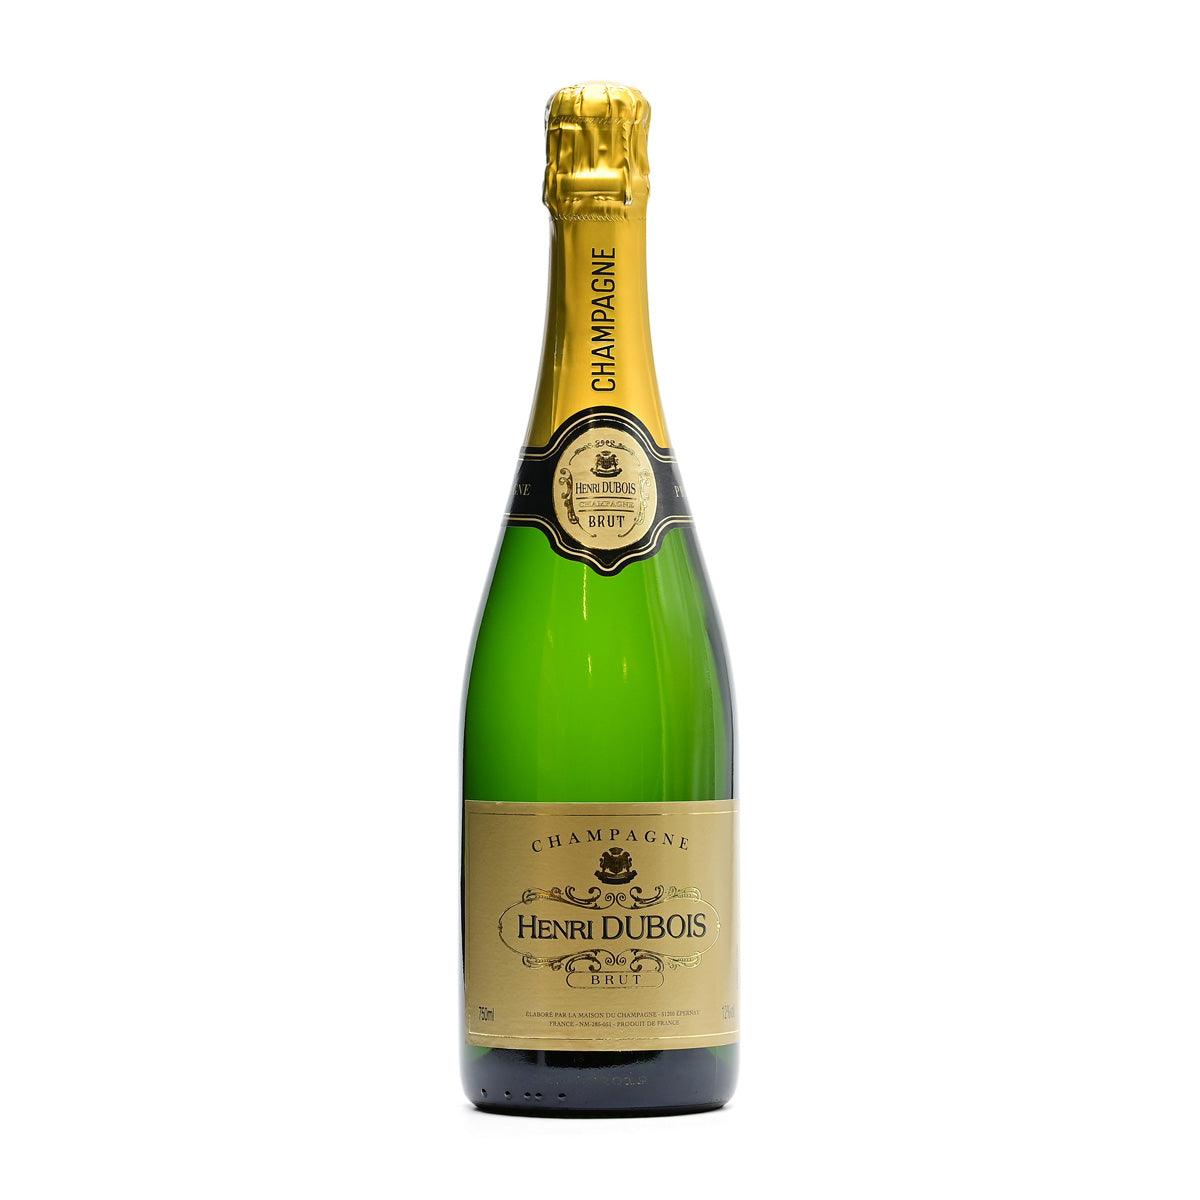 Champagne Henri Dubois Brut NV - Champagne - GDV Fine Wines® - 750ml, Champagne, Champagne Henri Dubois, France, Non-Vintage, Vallée de la Marne et Côte des Bars, Wine Product